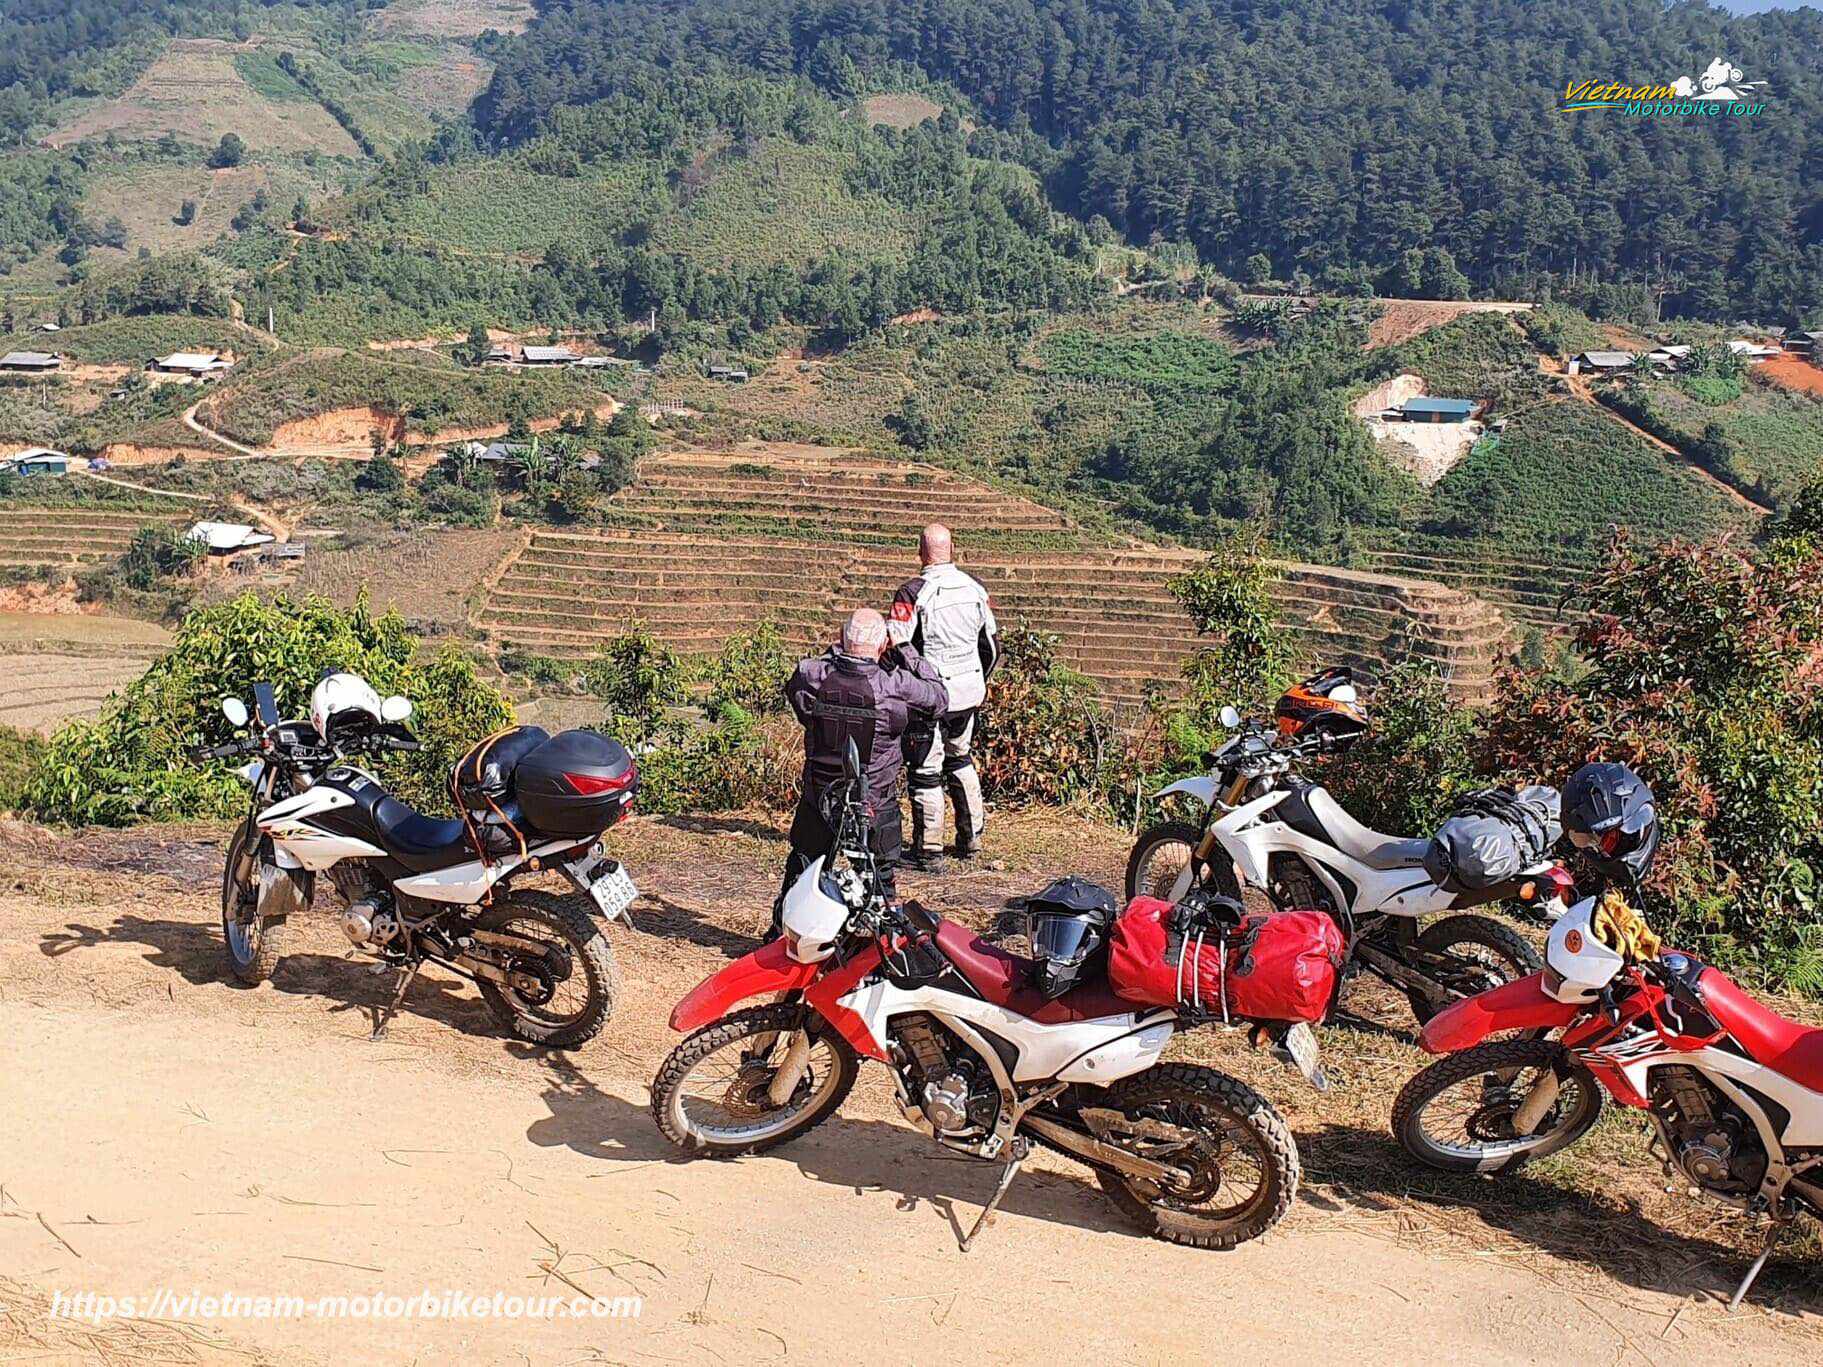 MAI CHAU MOTORCYCLE TOUR TO PHU YEN